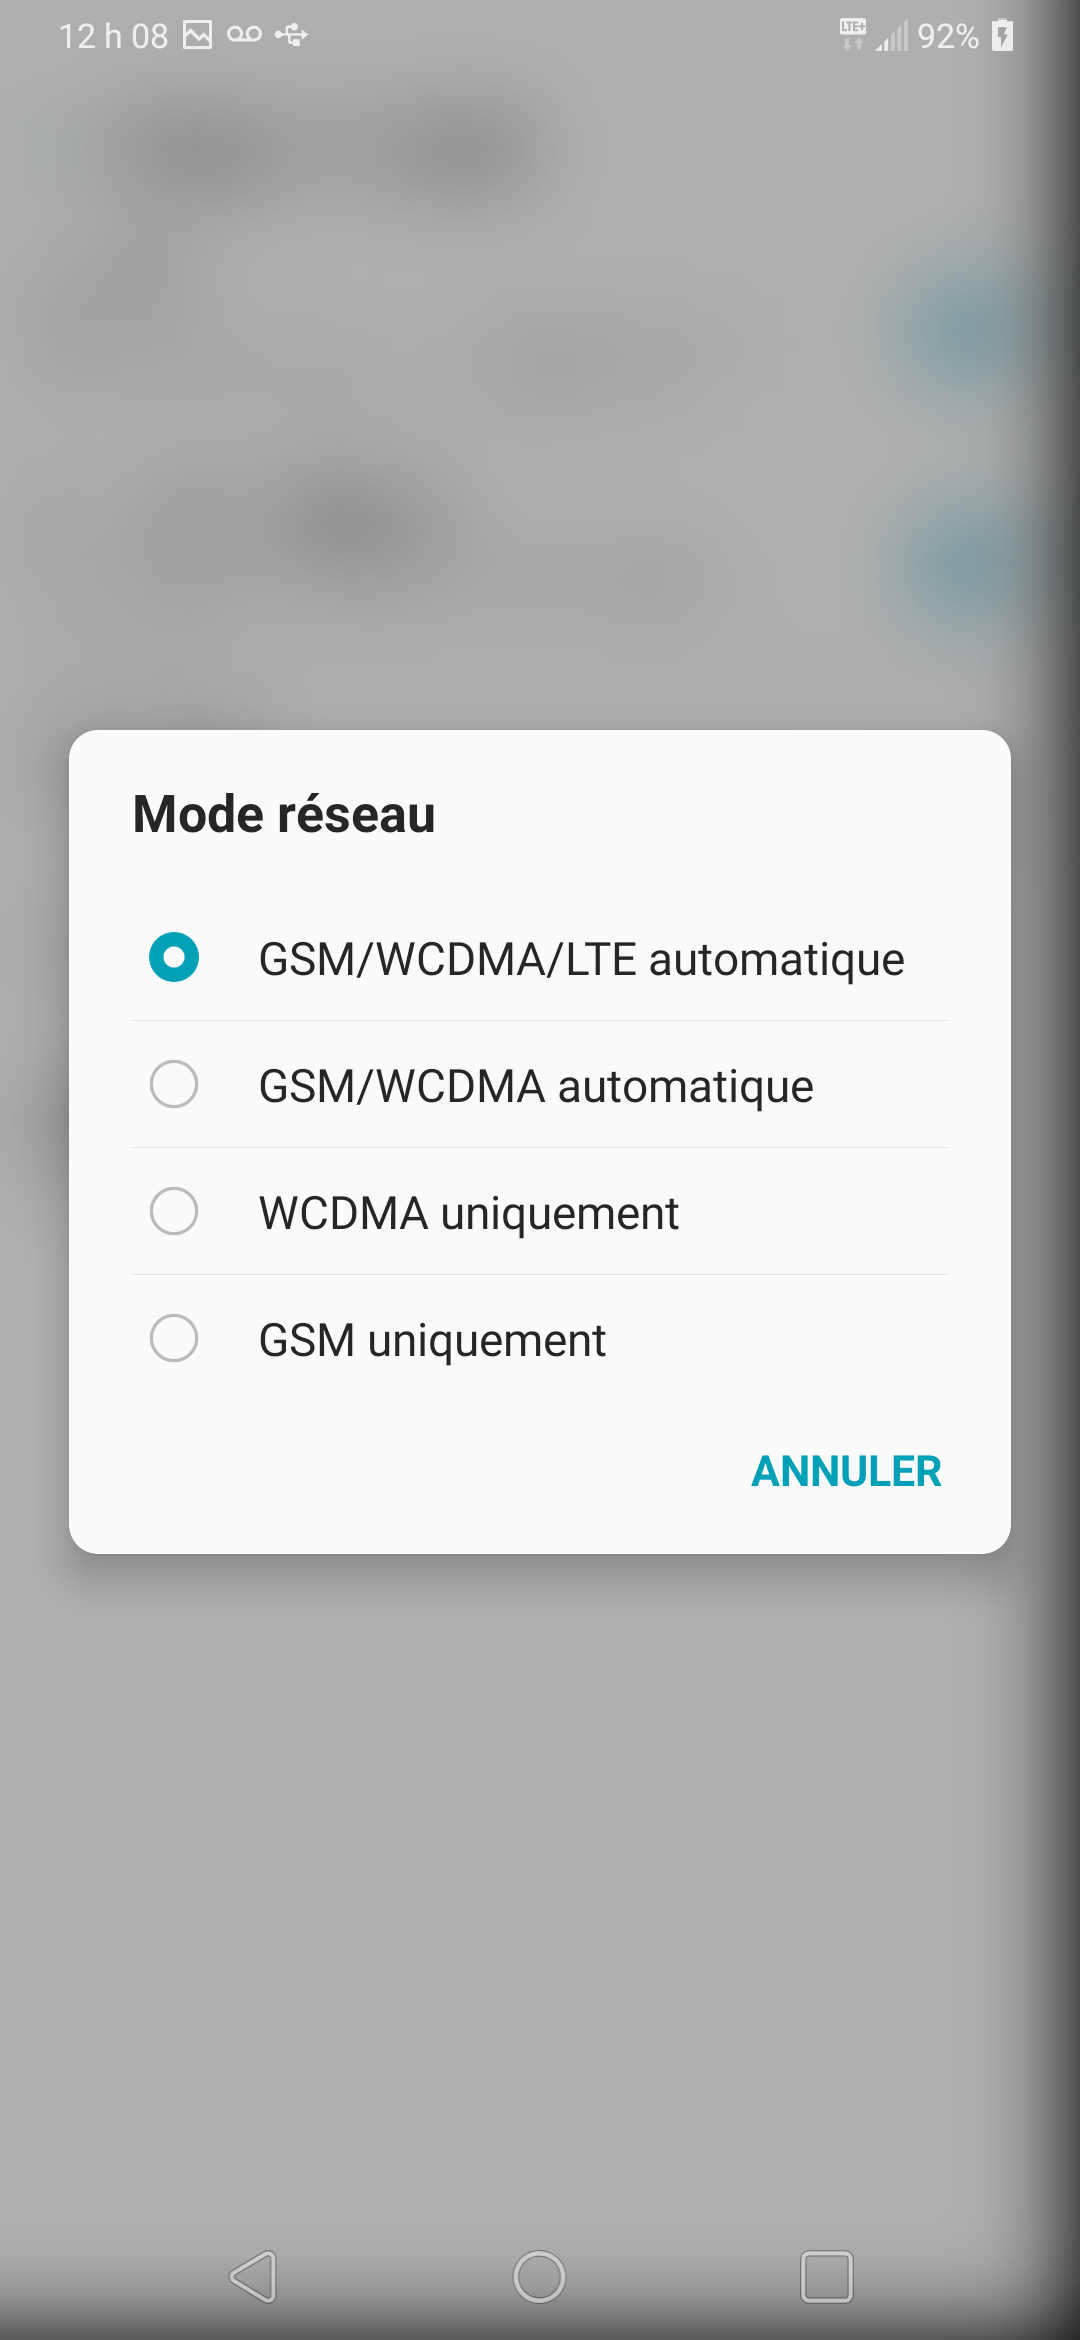 Touchez lʼoption désirée (p. ex., GSM/WCDMA/LTE automatique).